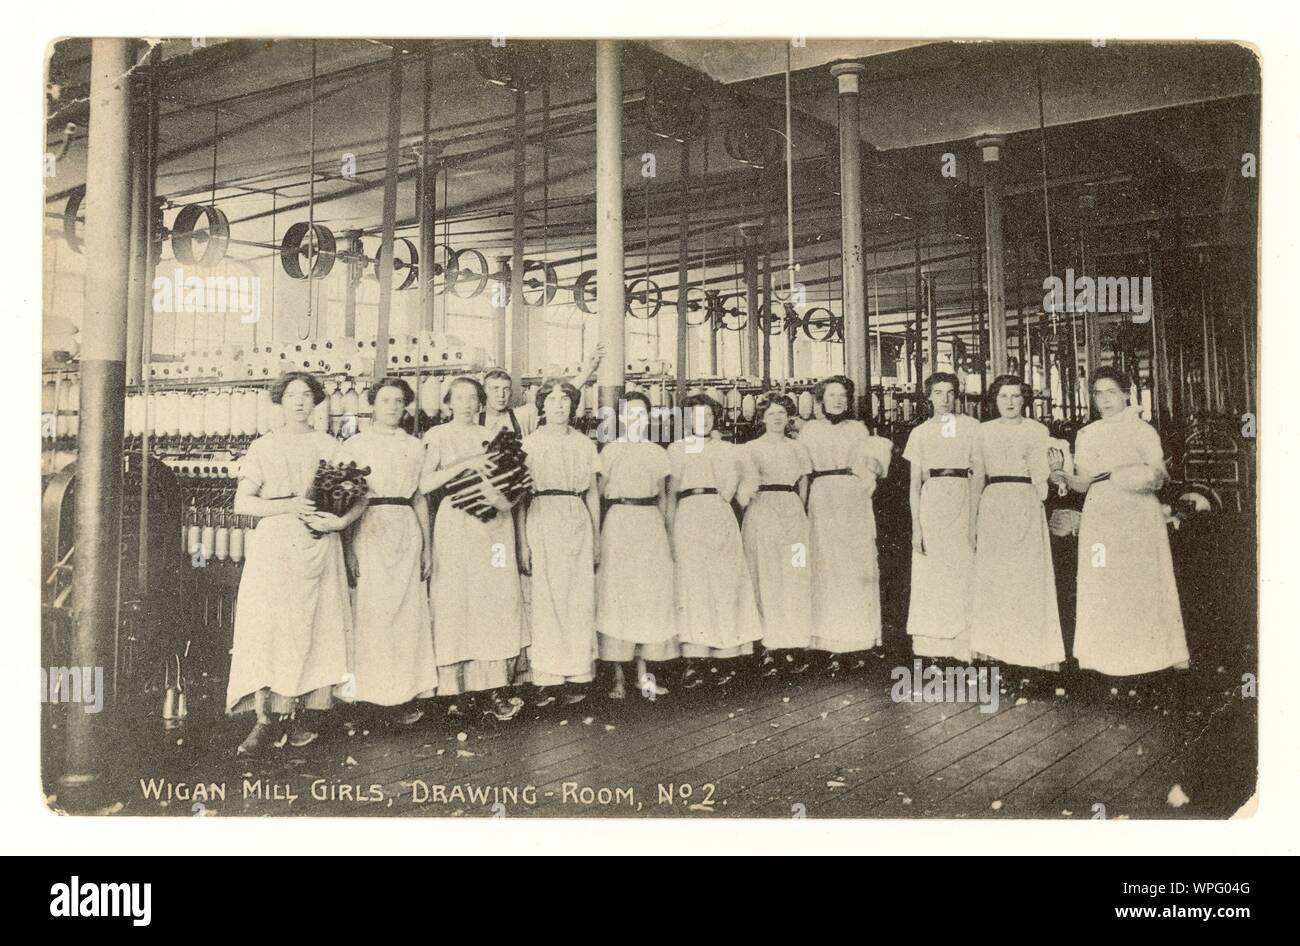 Début des années 1900 Carte postale de Wigan Mill girls - 'filles' Lancashire, dans la salle de dessin, Wigan, Greater Manchester, Royaume-Uni vers 1910 Banque D'Images